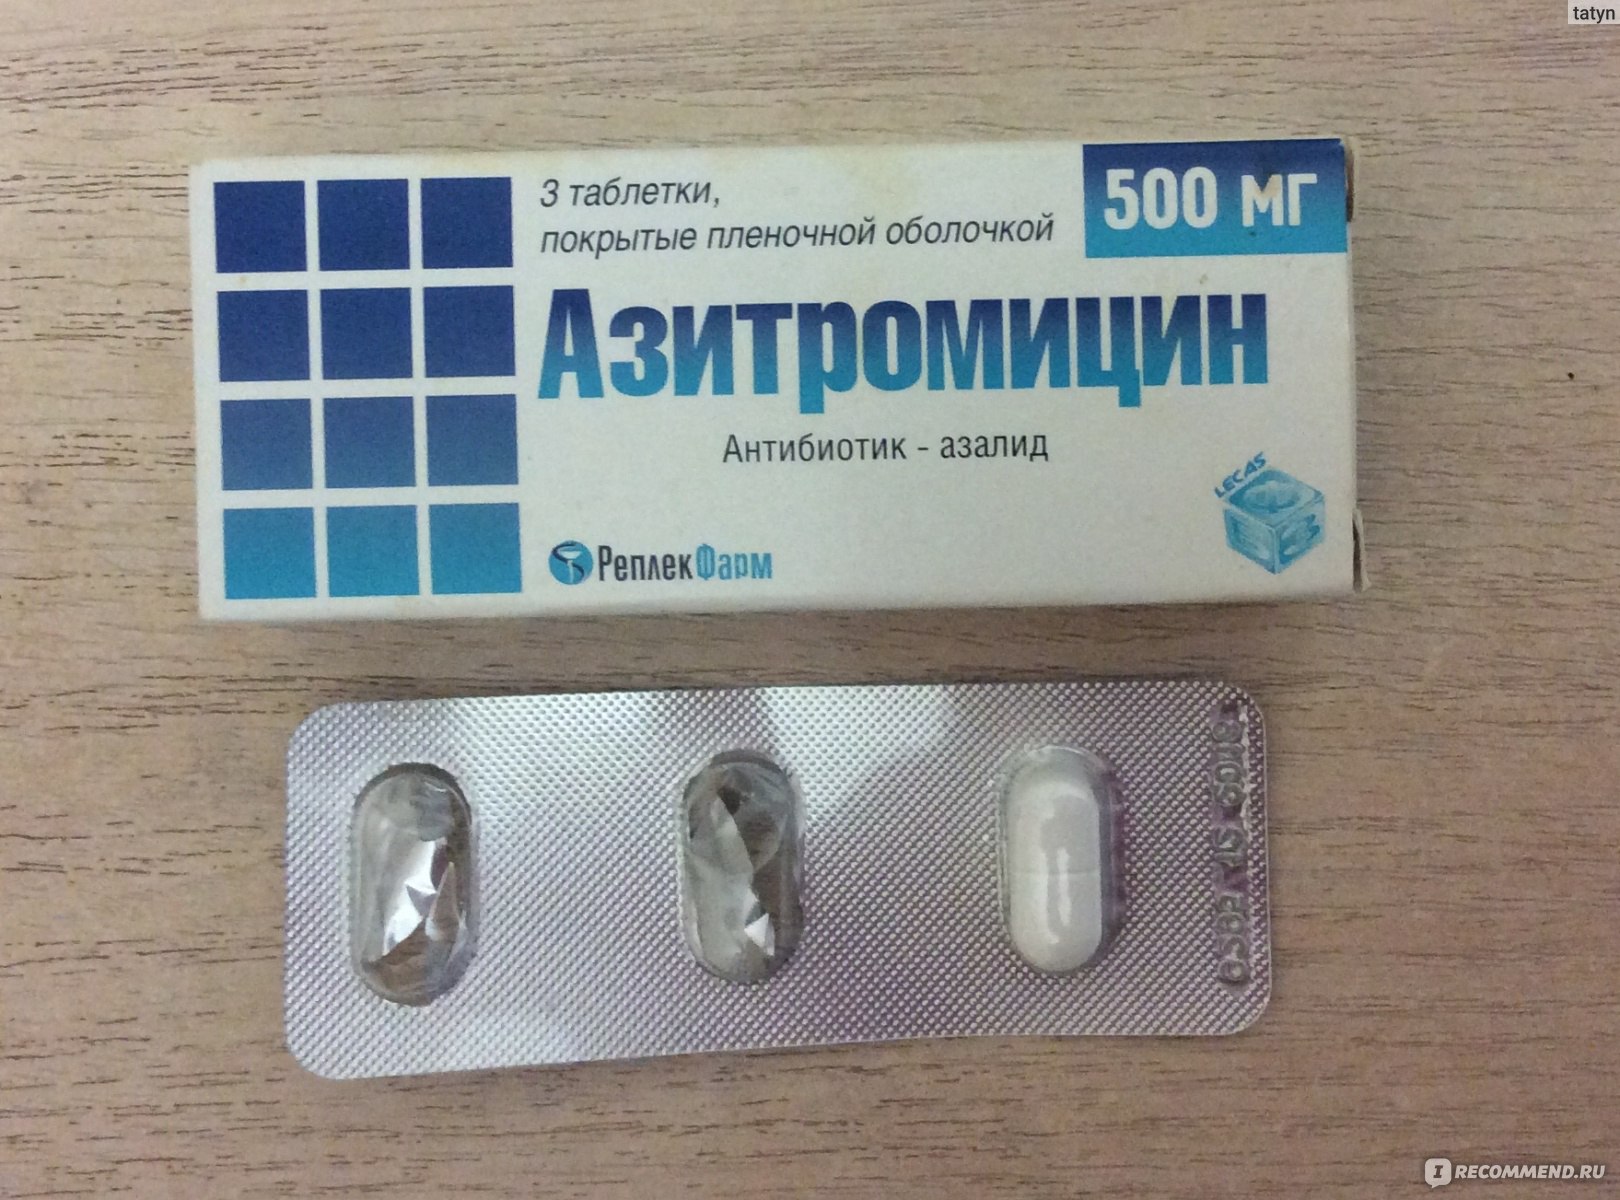 Три антибиотика. Антибиотик Азитромицин 500 мг. Антибиотик 3 таблетки в упаковке Азитромицин. Антибиотик от кашля 3 таблетки название. Сильный антибиотик от простуды 3 таблетки.